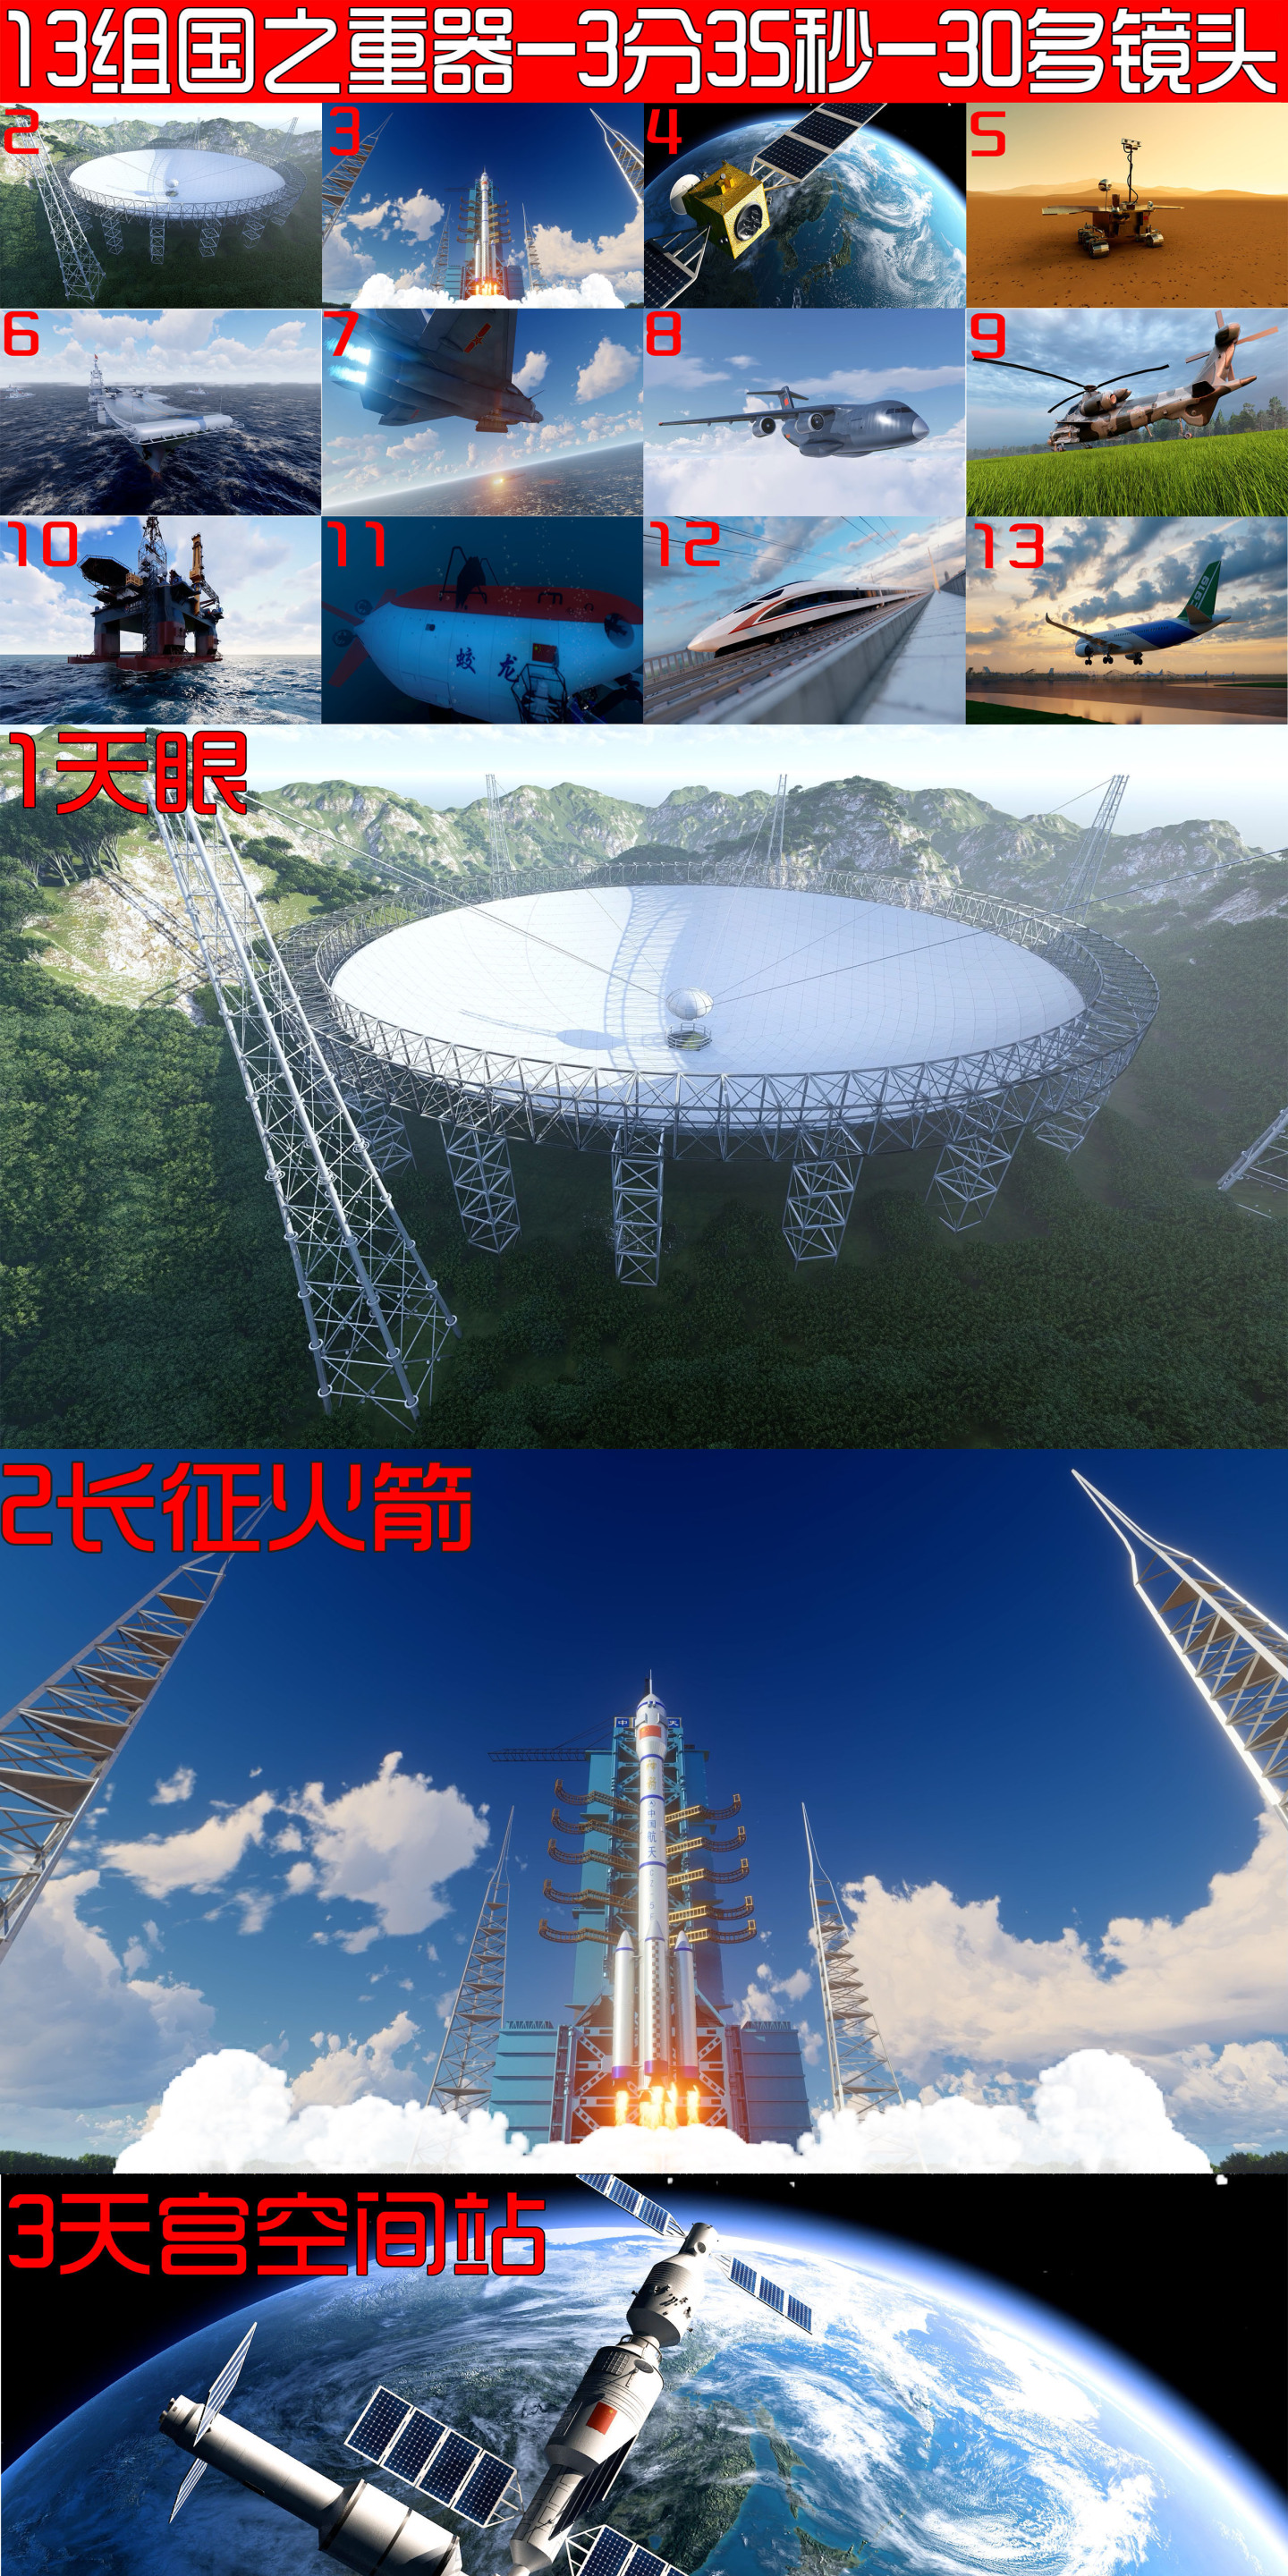 大国重器中国科技发展强军中国梦 火箭发射